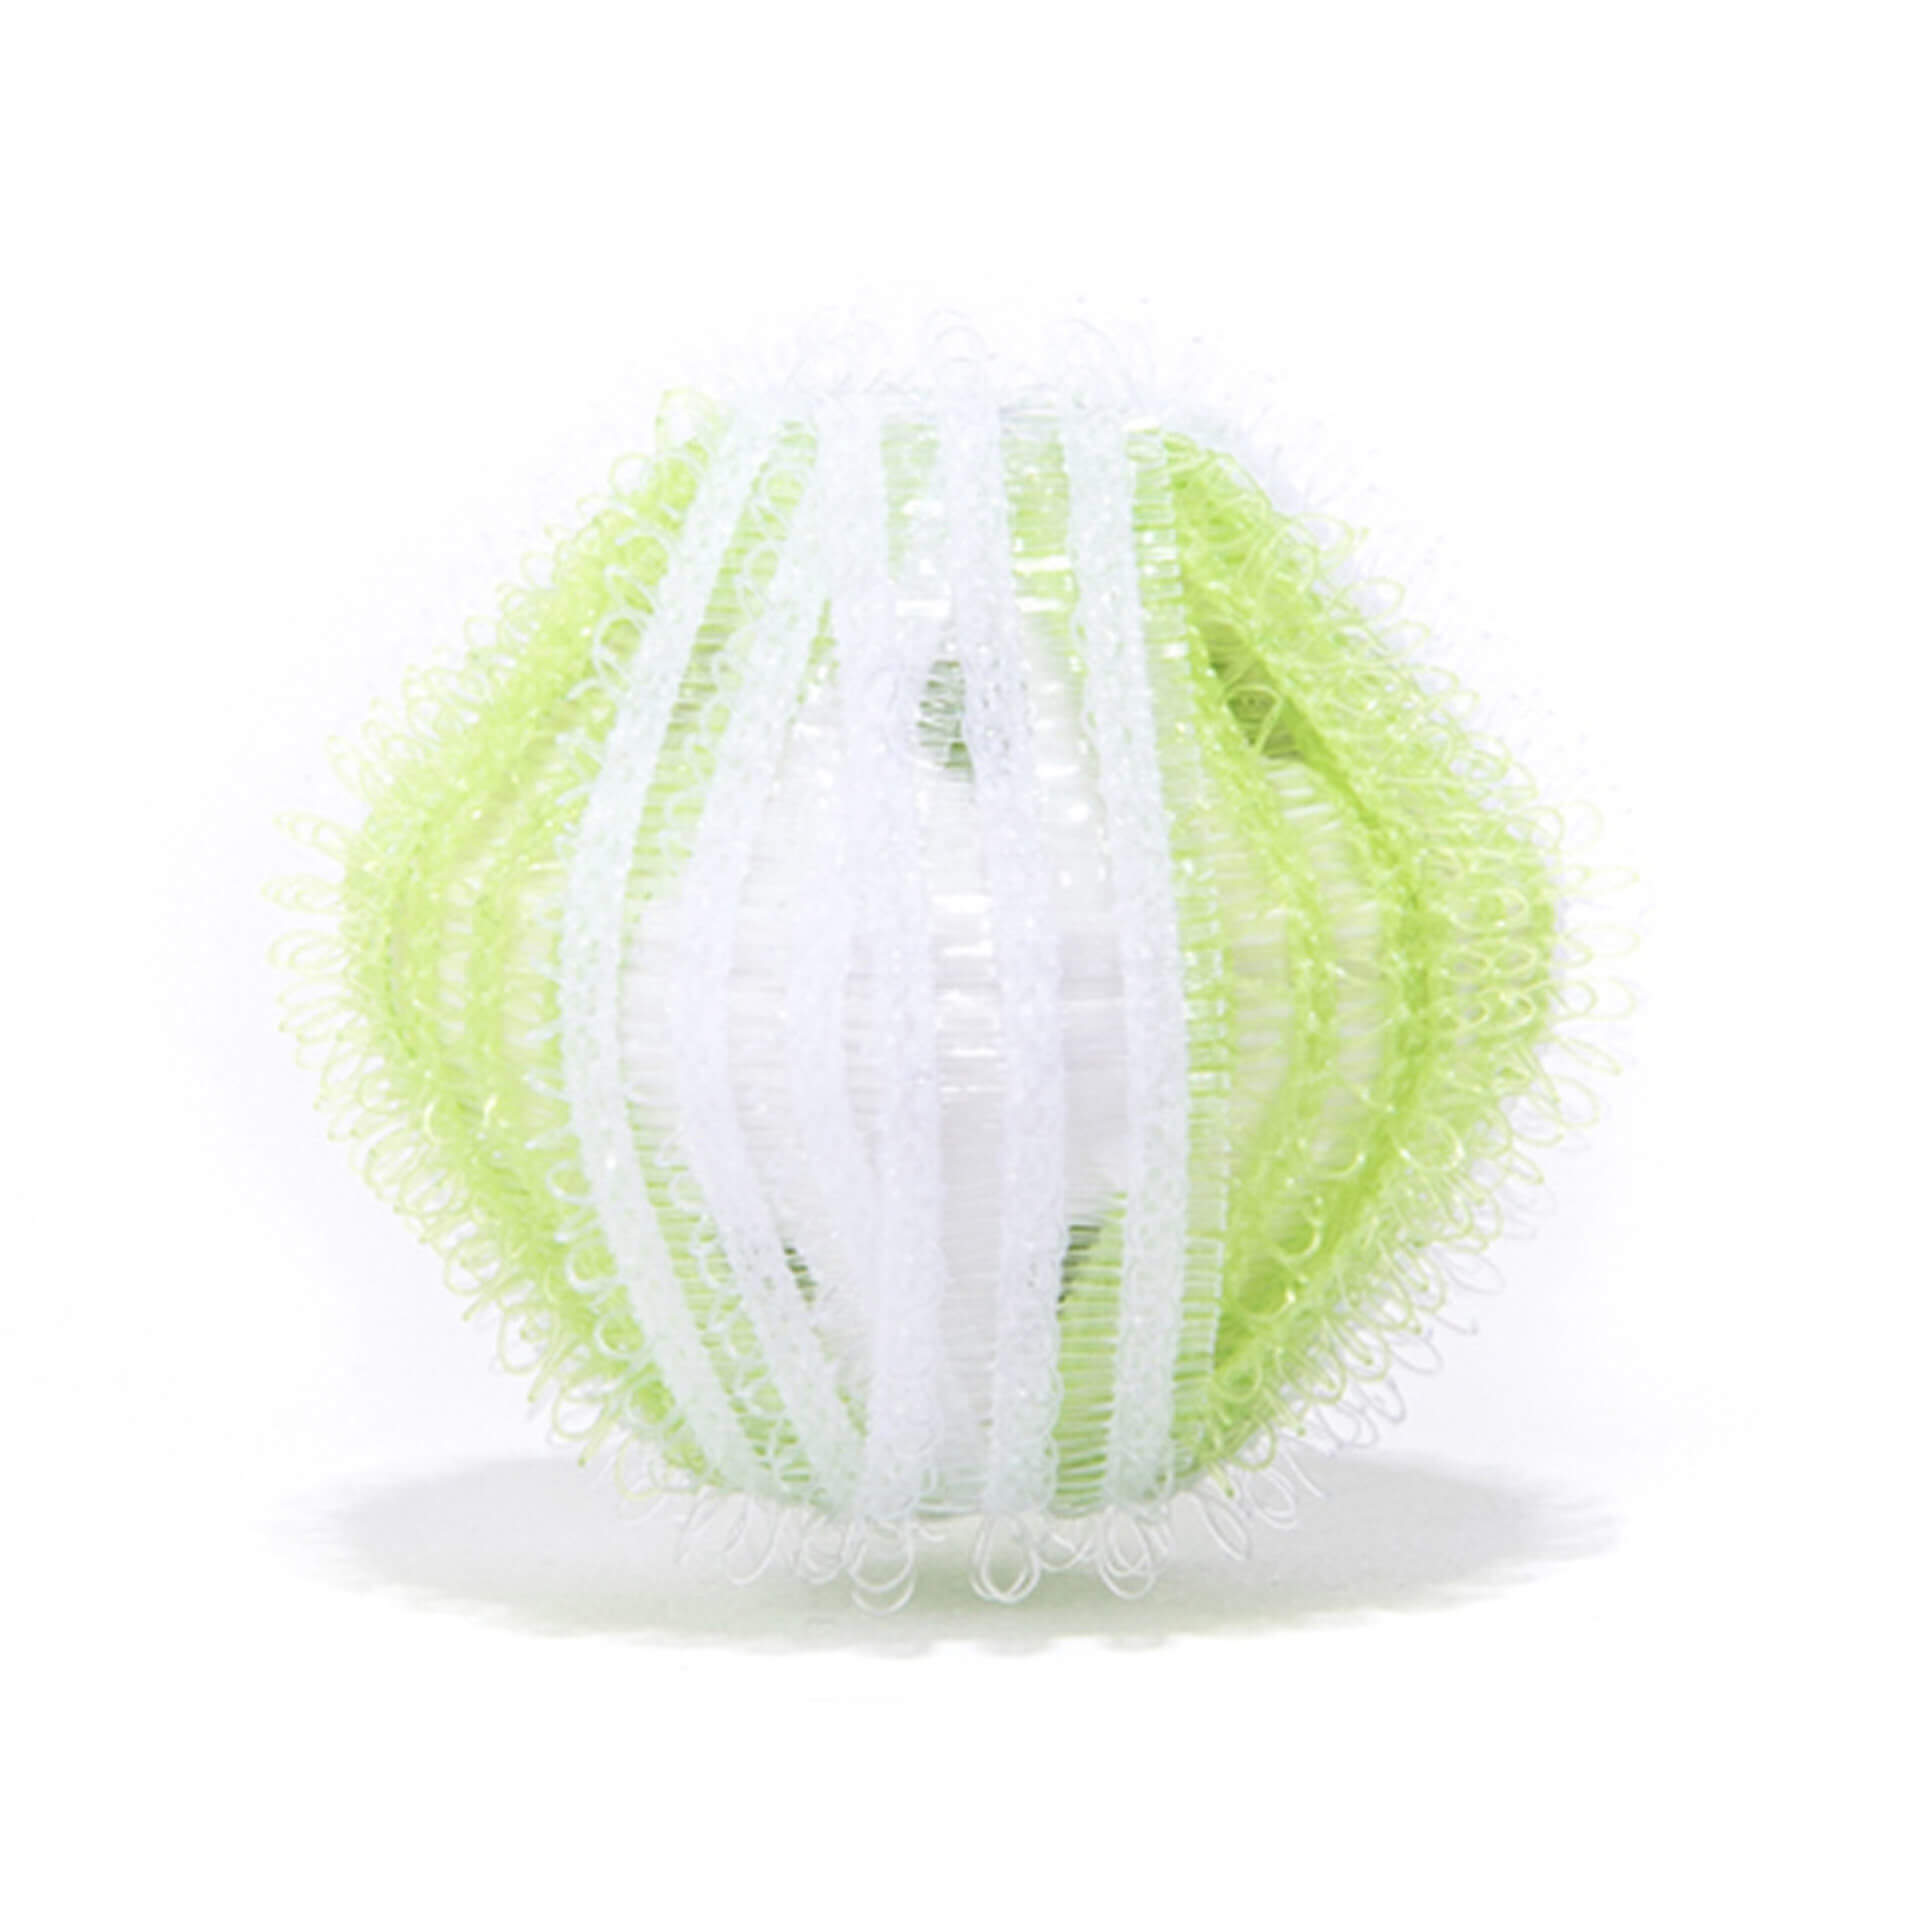 Altro che trucco delle palline: metti questo dentro la lavatrice  Peli,  capelli e pelucchi spariscono con un solo lavaggio - Bio Pianeta